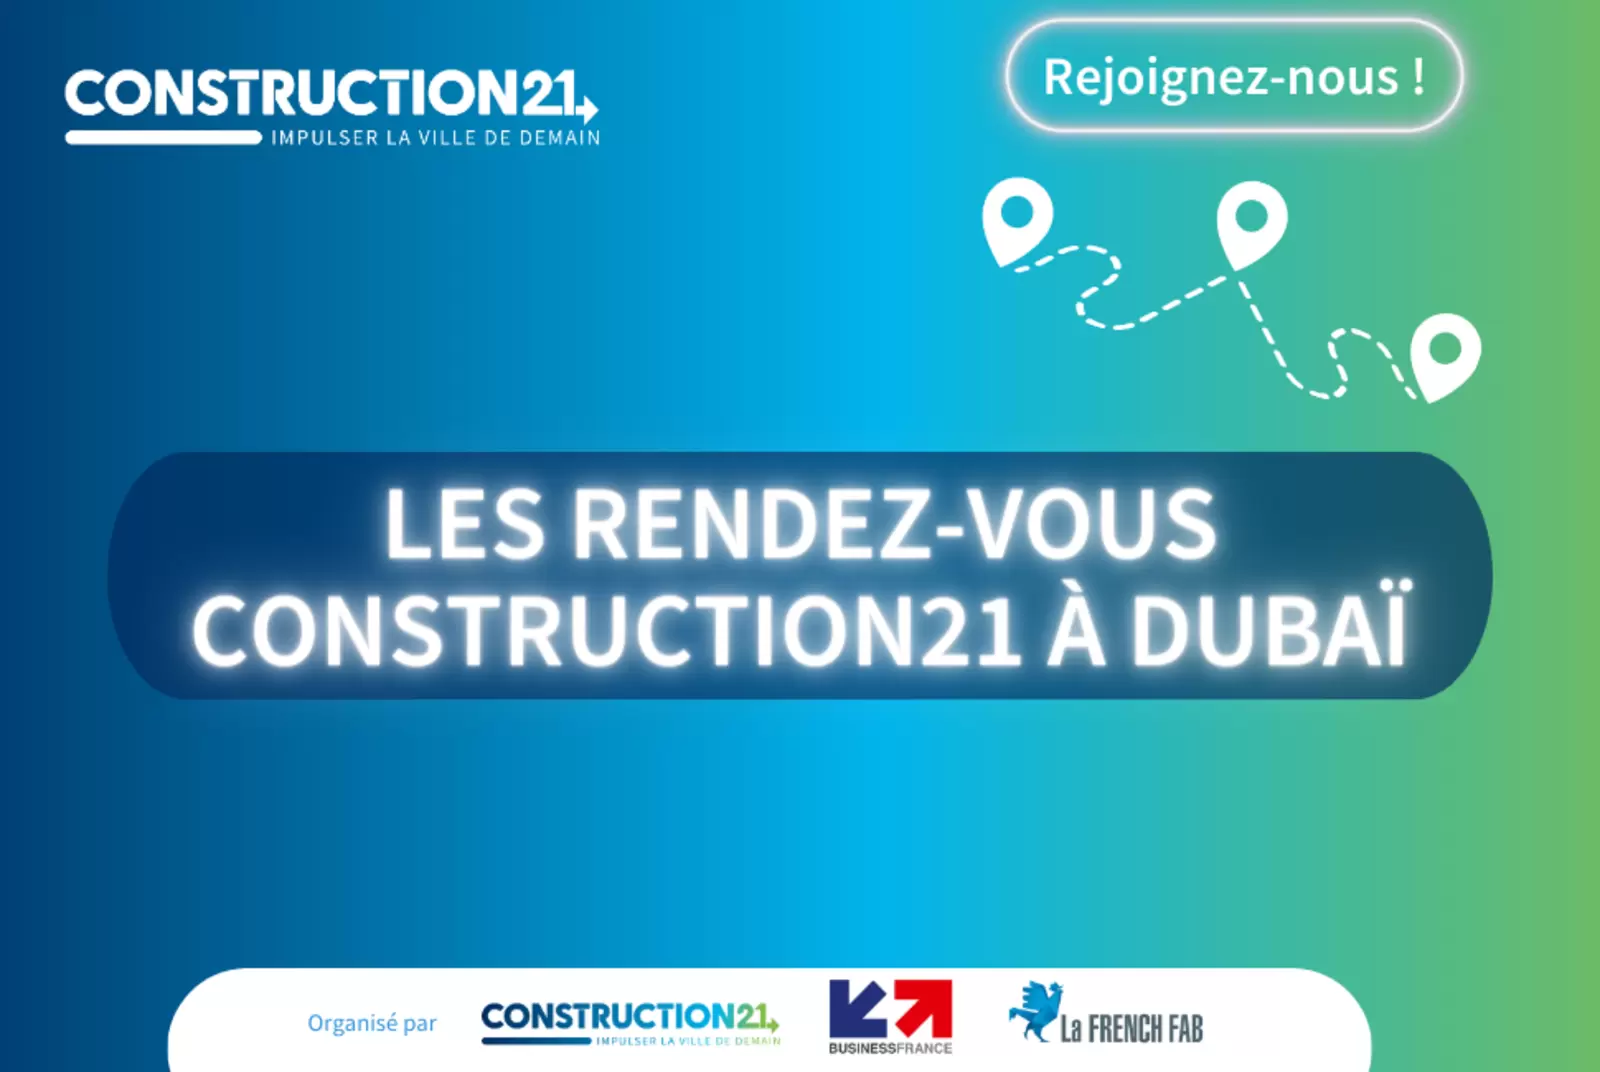 Découvrez le programme de Construction21 à Dubaï